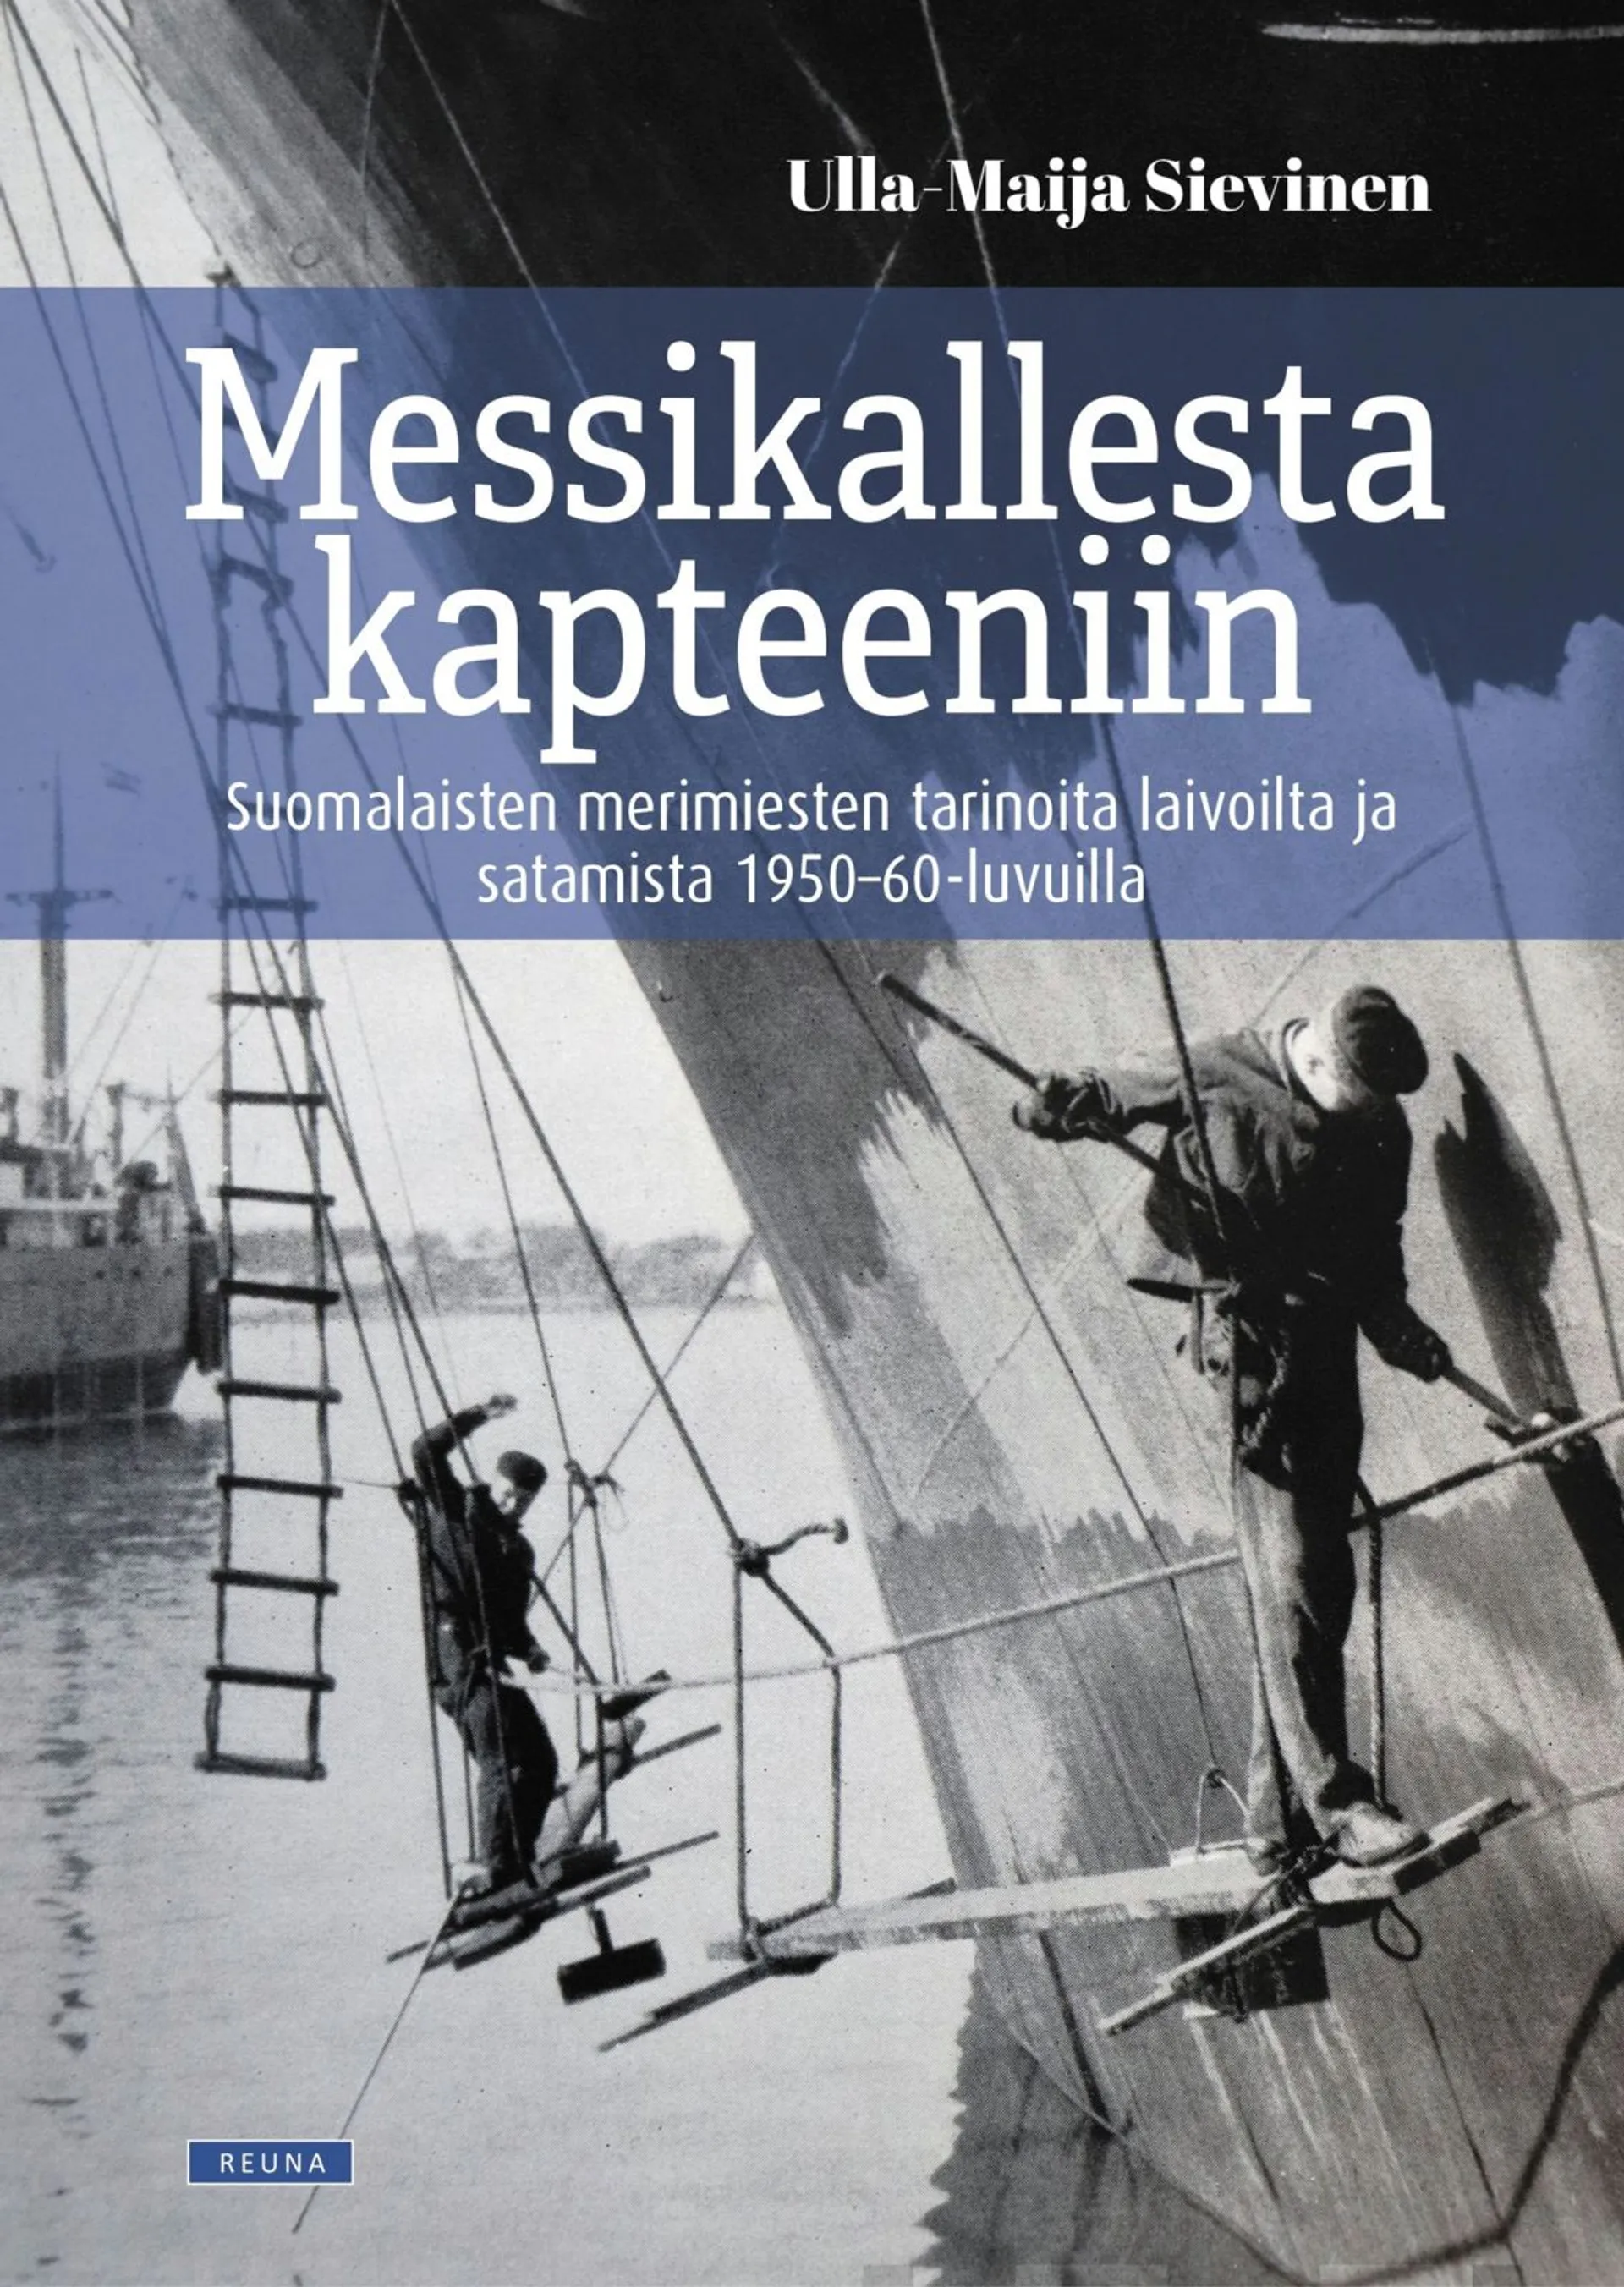 Sievinen, Messikallesta kapteeniin - Suomalaisten merimiesten tarinoita laivoilta ja satamista 1950-60-luvuilta